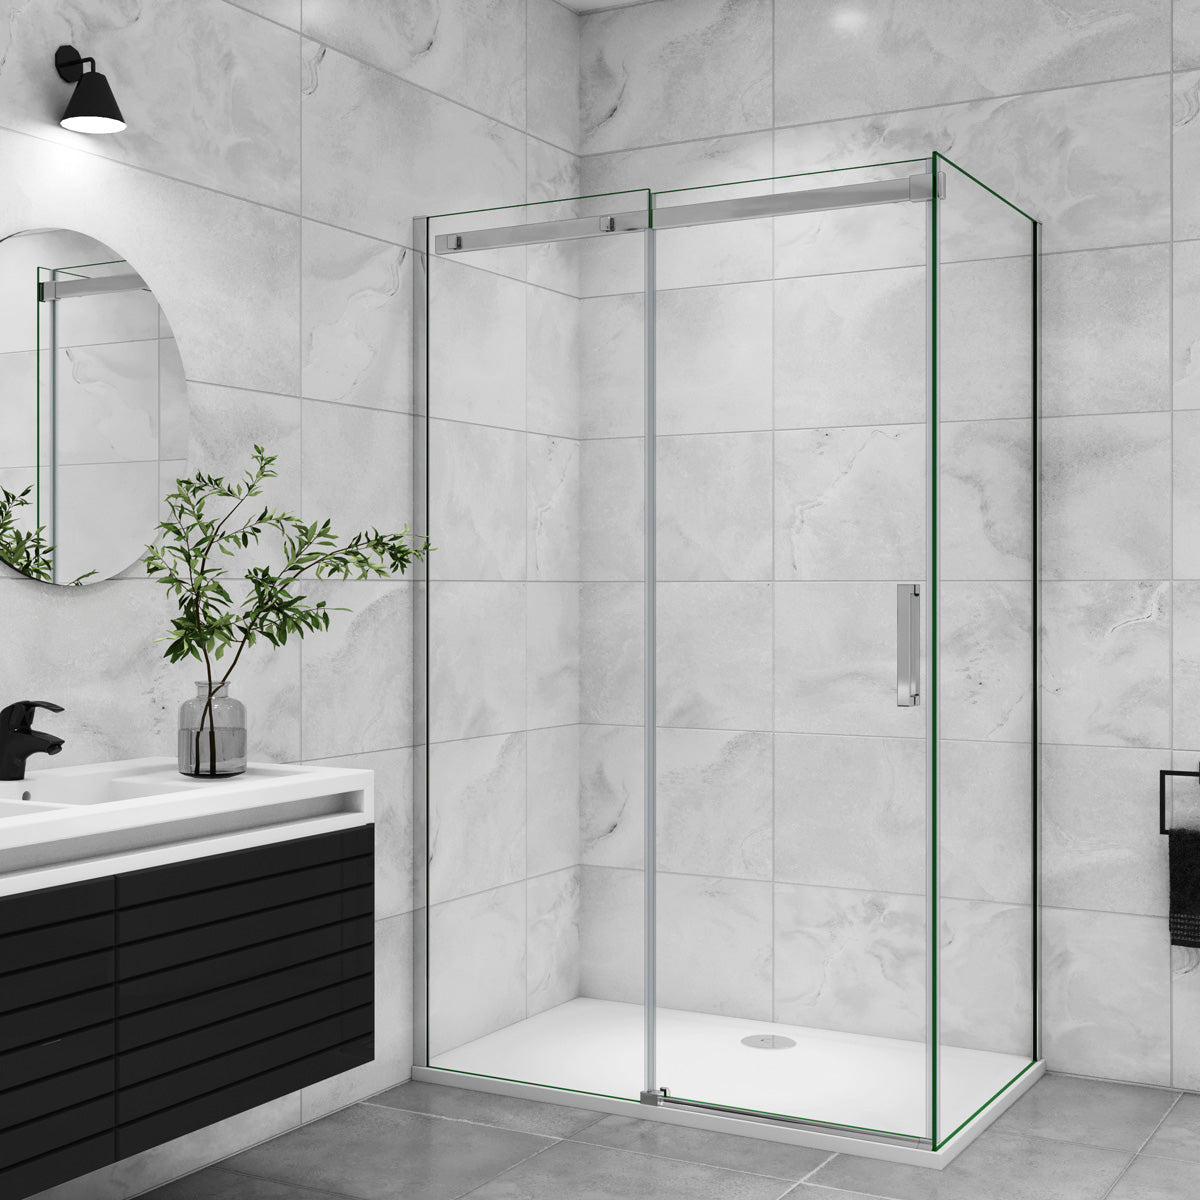 Duschtür+Seitenwand Dusche Duschabtrennung Duschkabine 100x80 cm Glasstärke 8mm Schiebetür